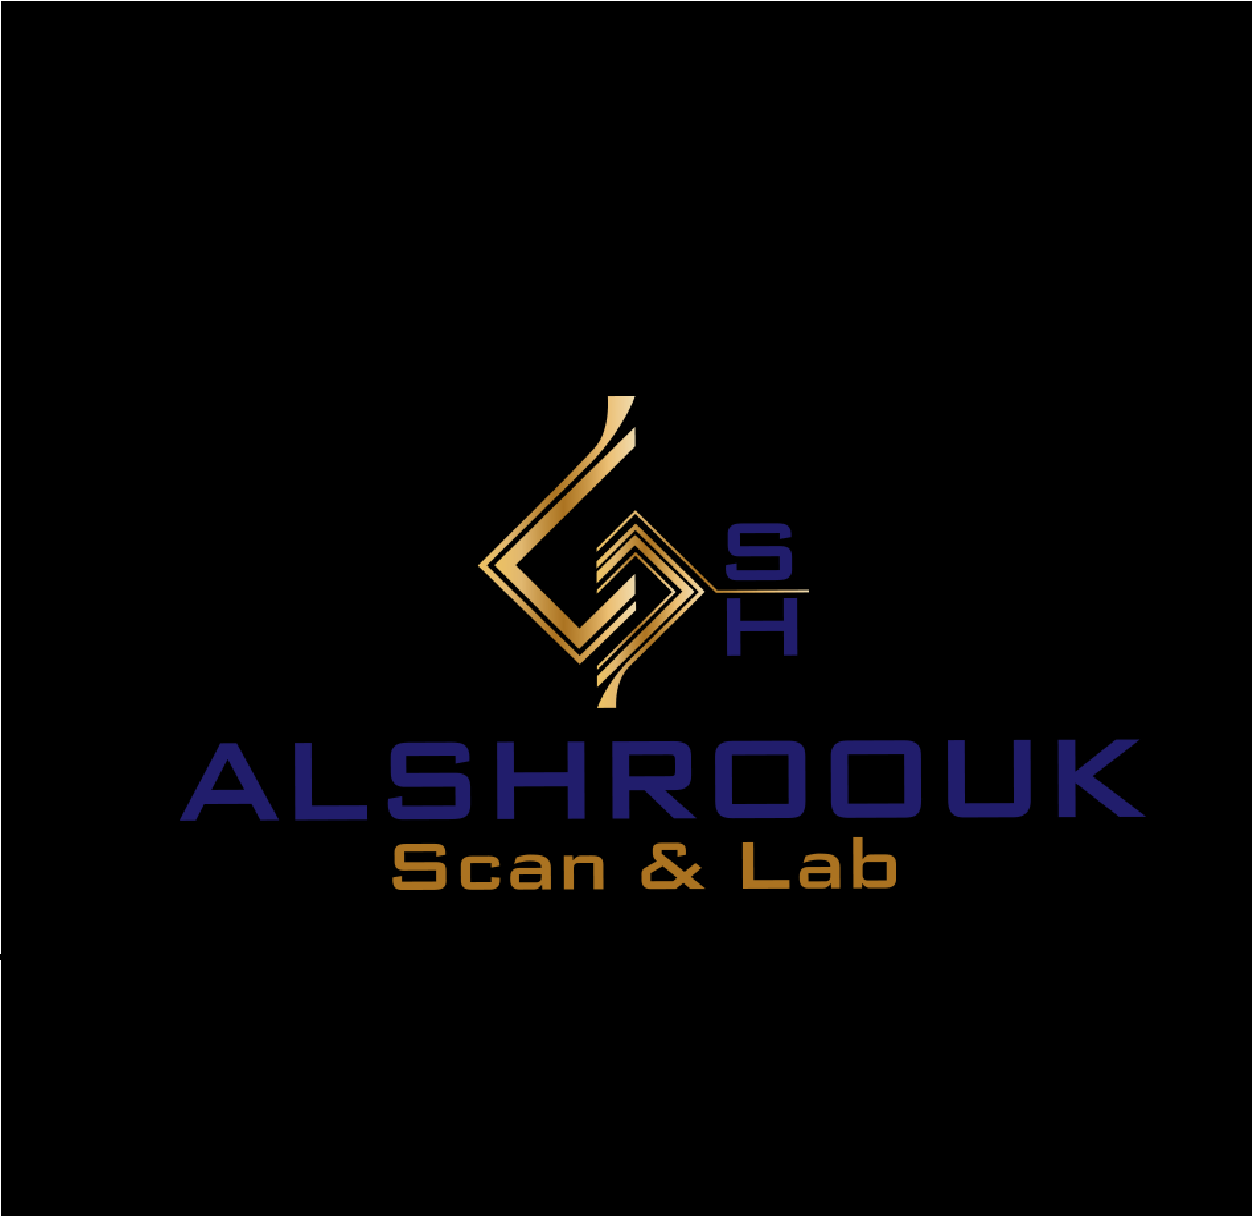 Al-Shroouk scan&lab